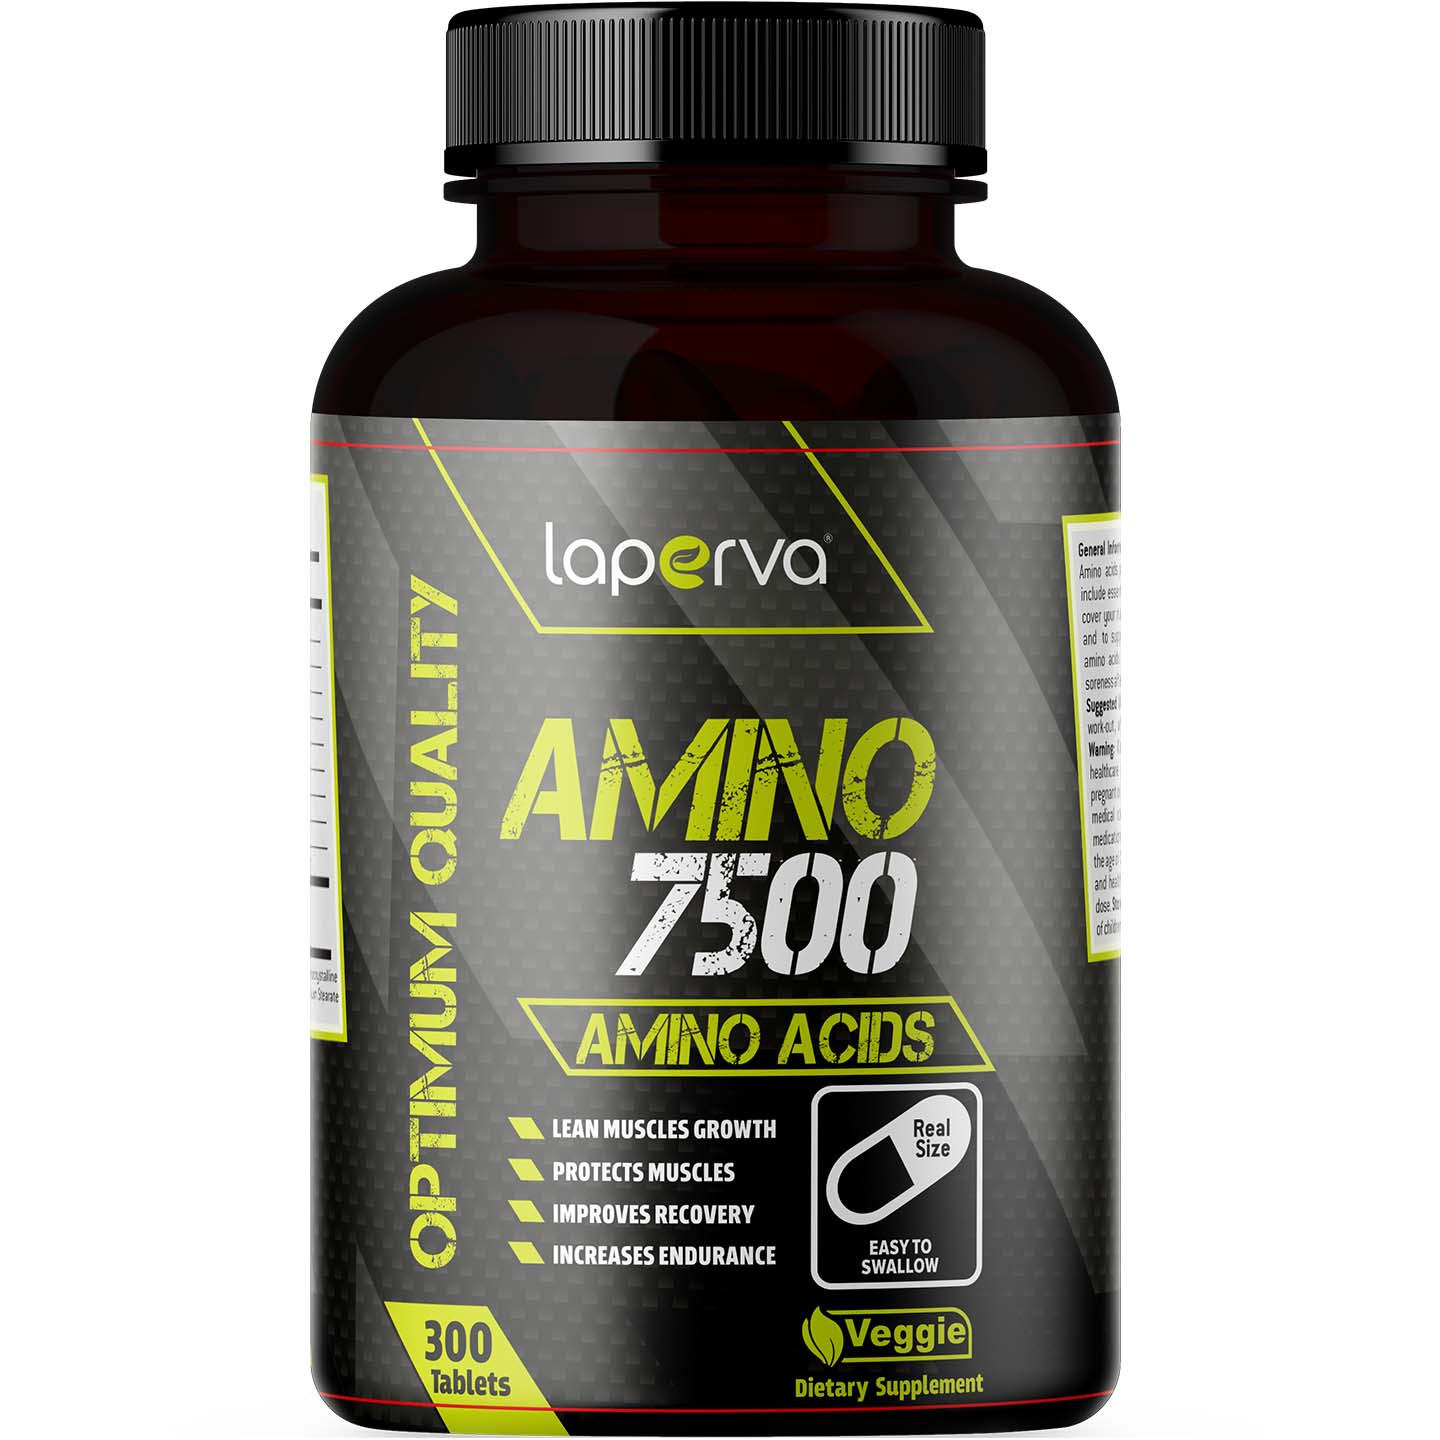 Laperva Amino Tablets, 7500 mg, 300 Tablets